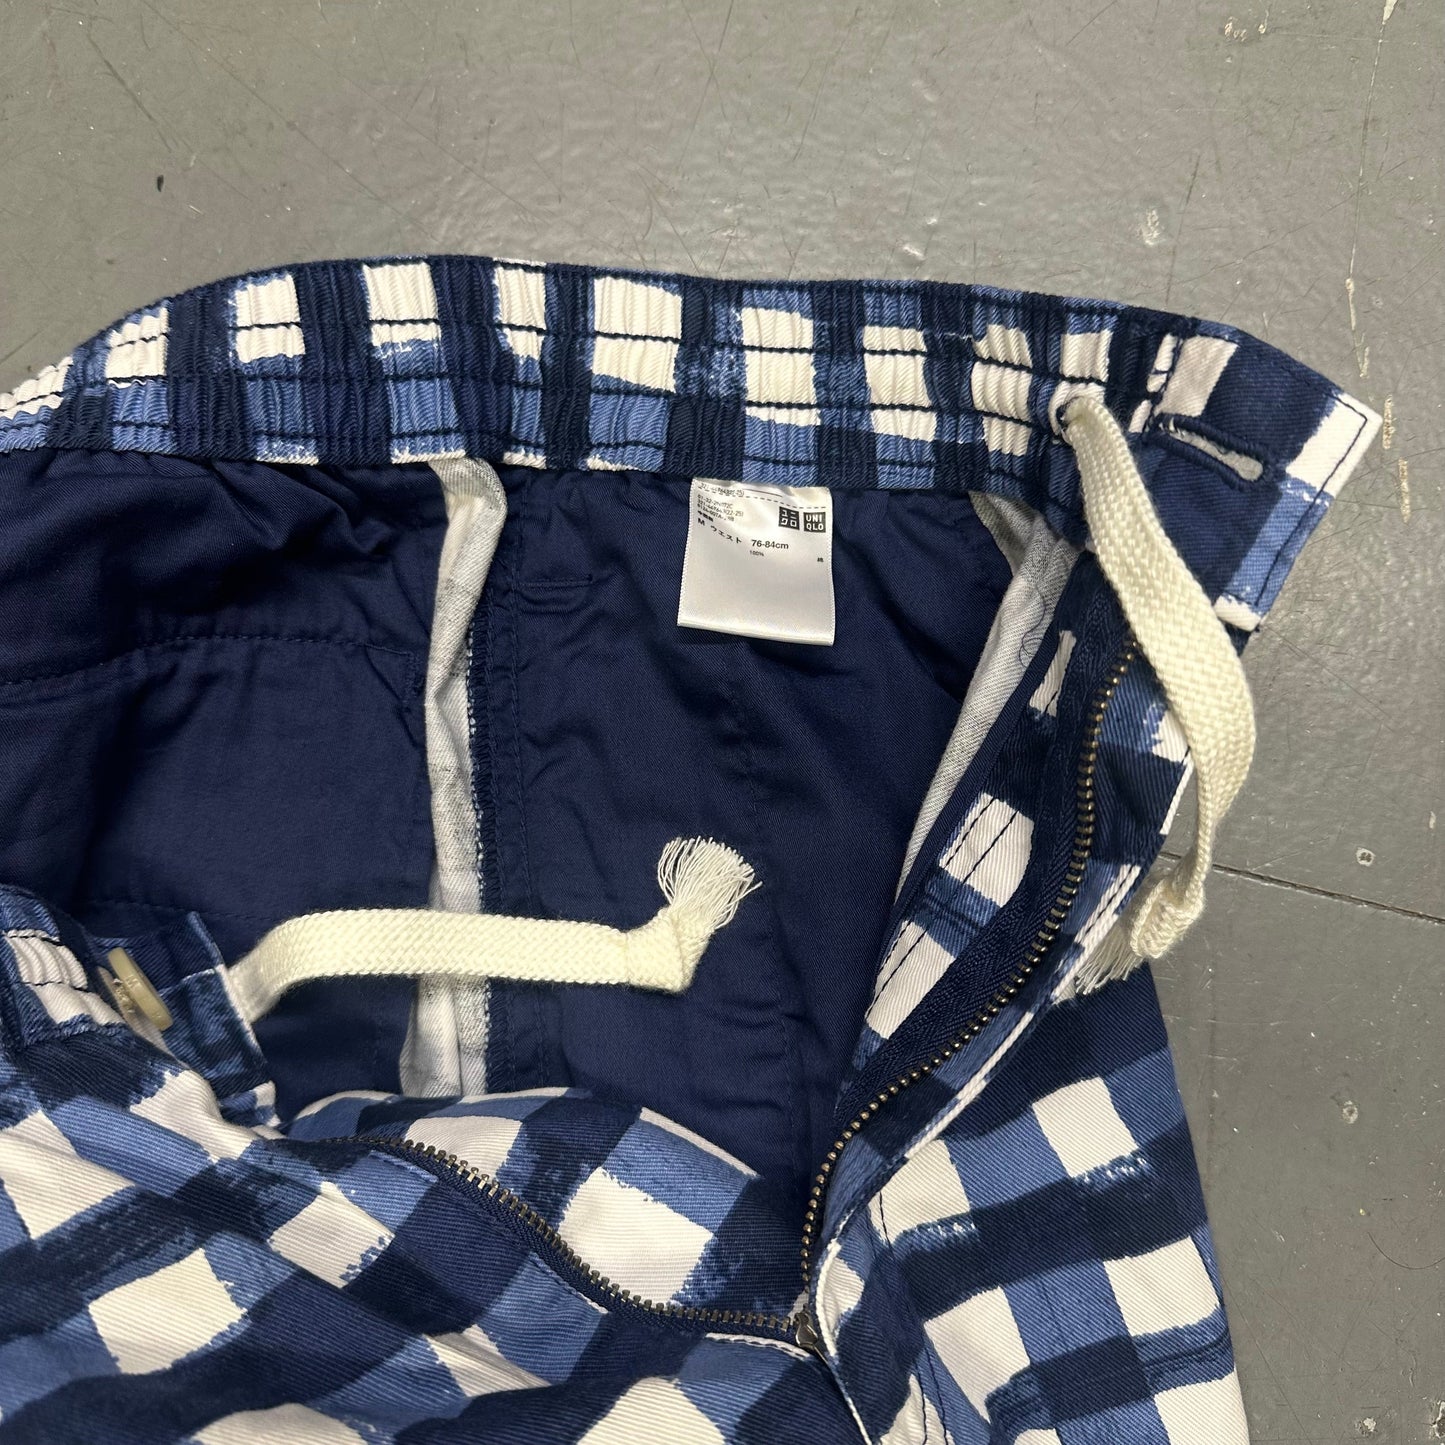 Uniqlo X Marni Wide Fit Check Shorts In Blue ( S )